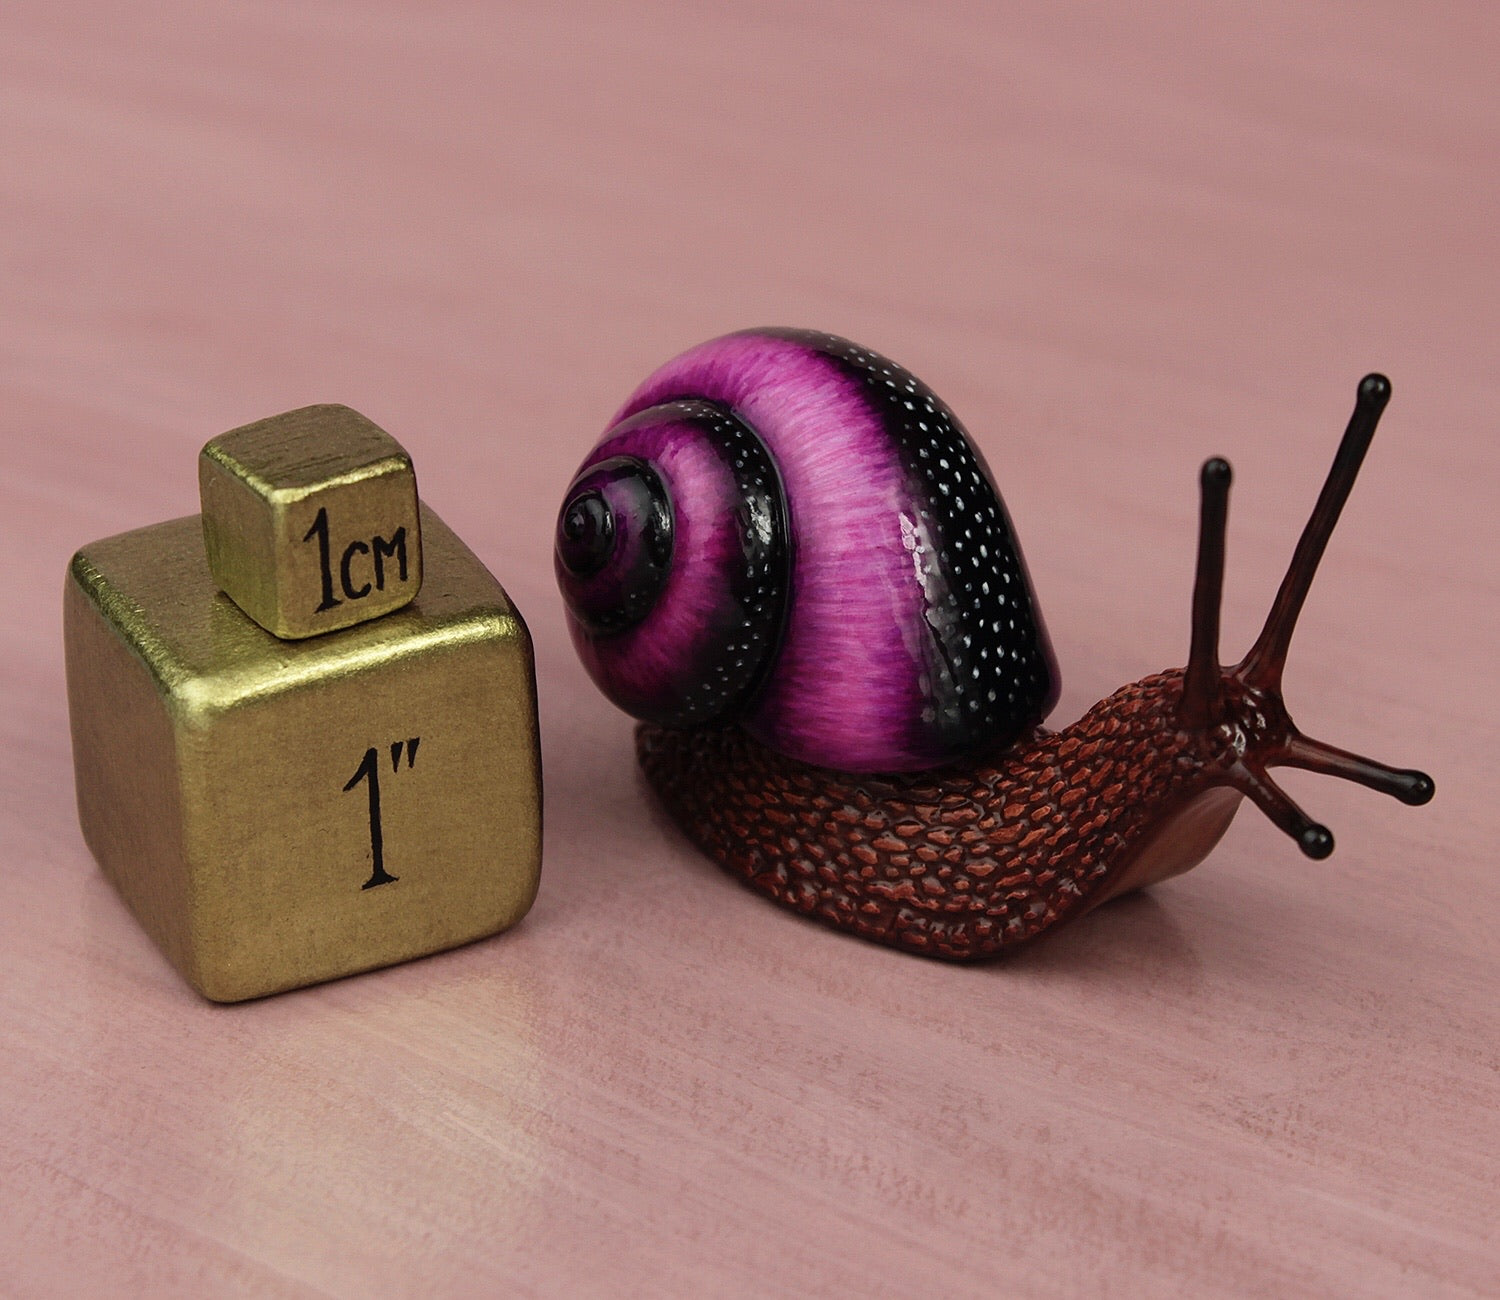 Purple snail